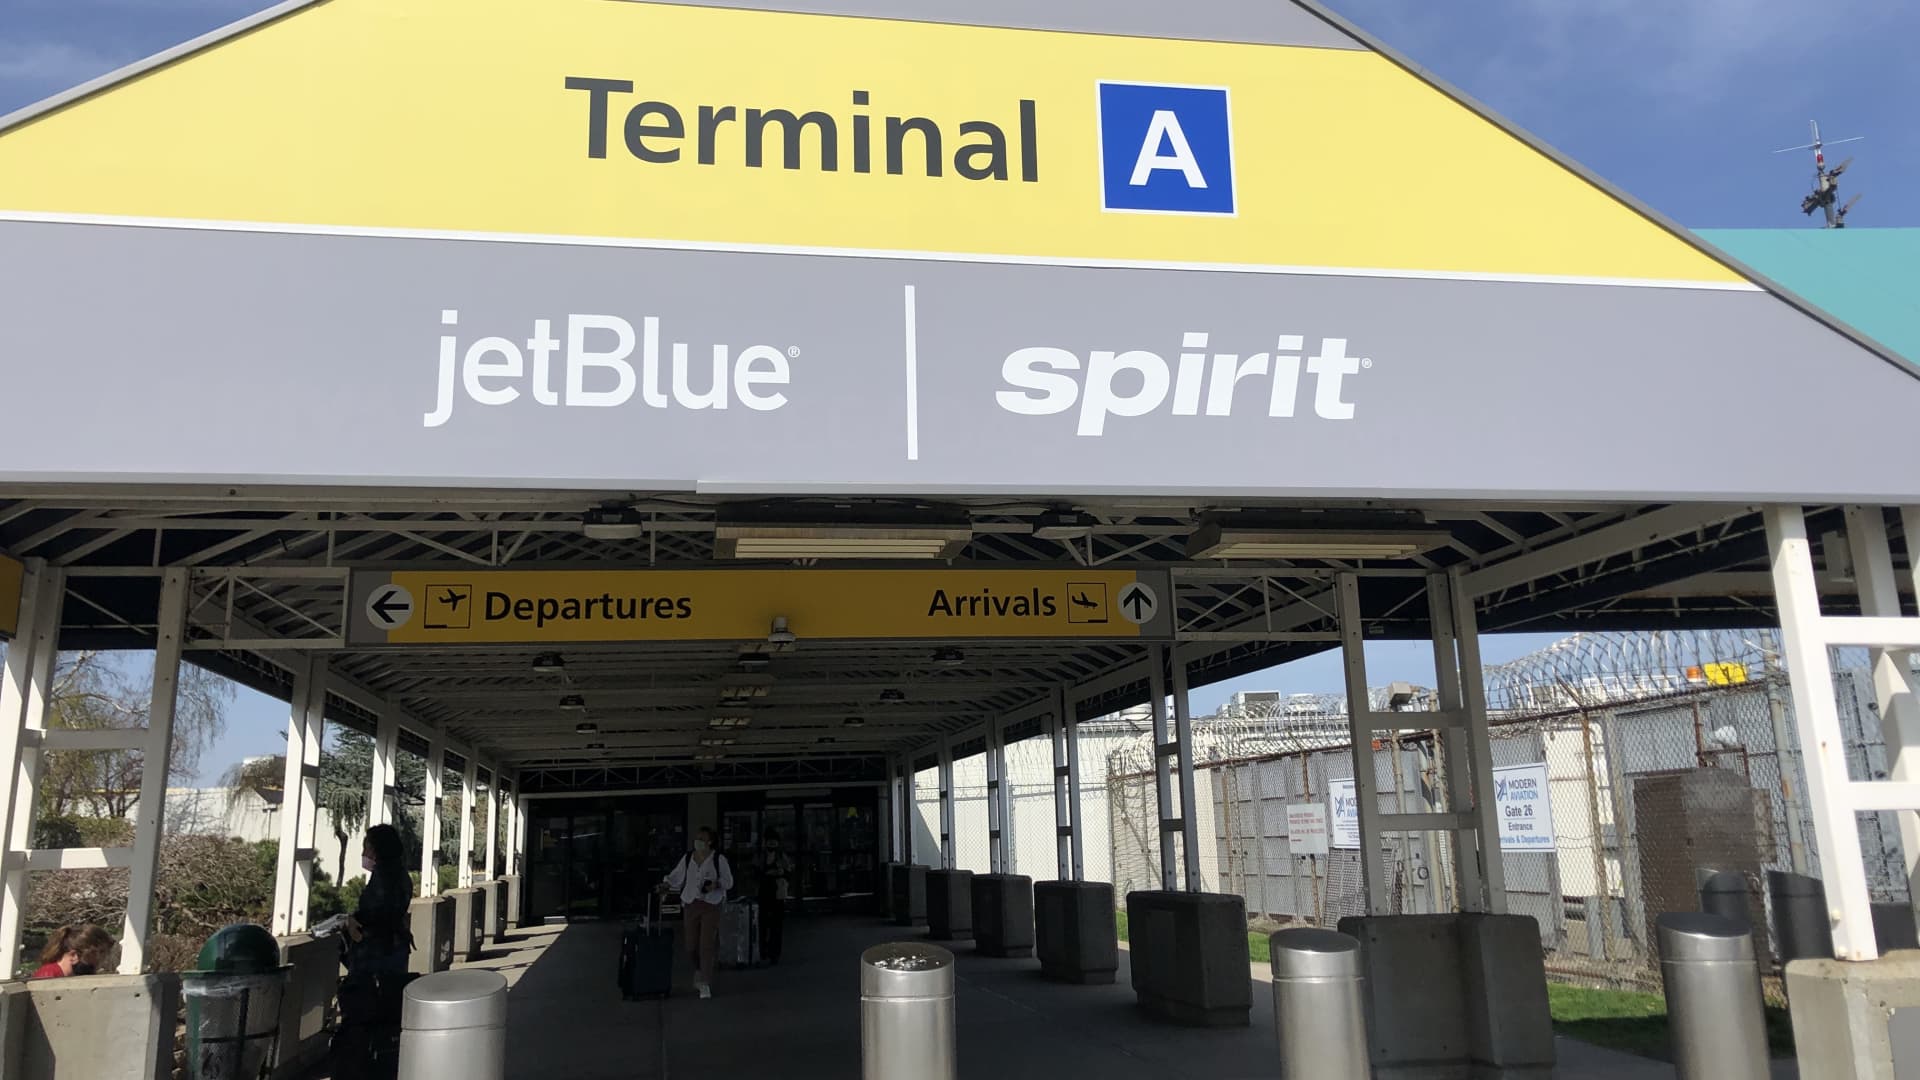 JetBlue-Spirit merger block in win for Biden's Justice Department